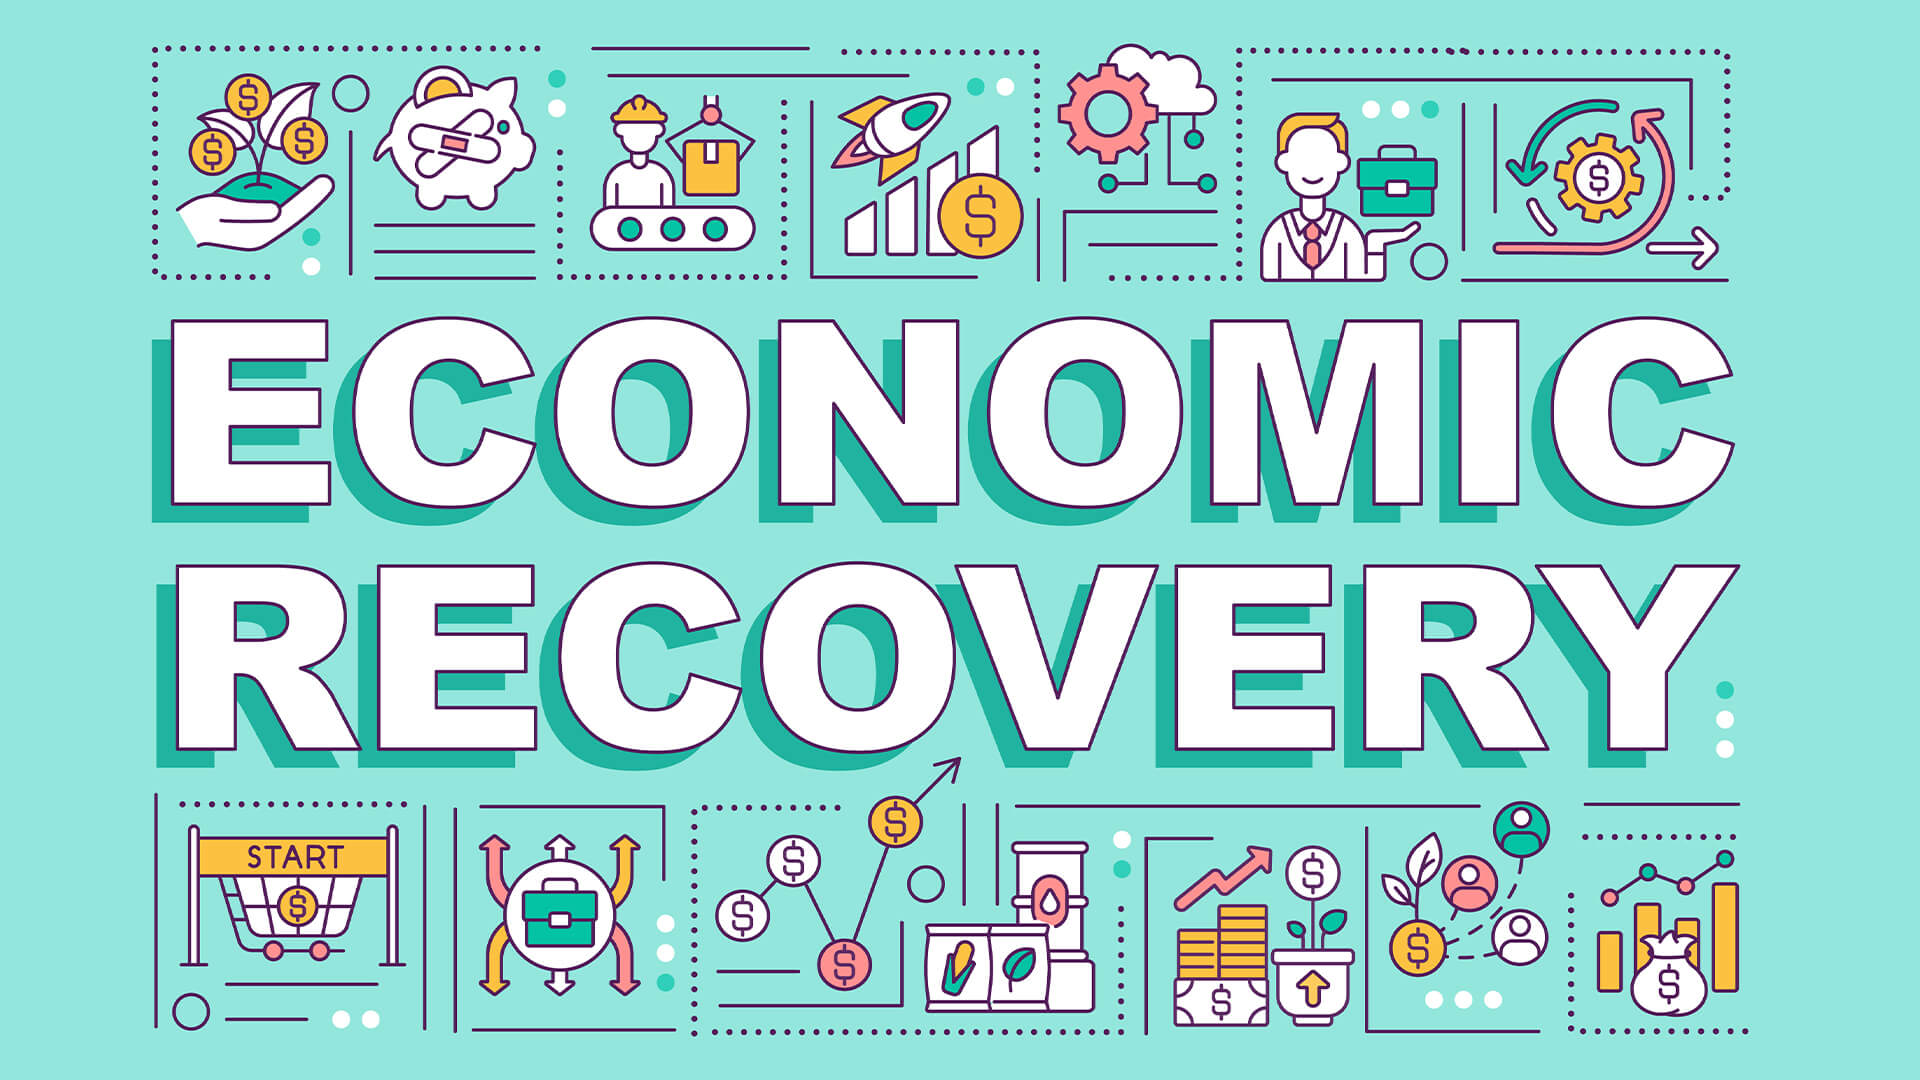 Economic Recovery